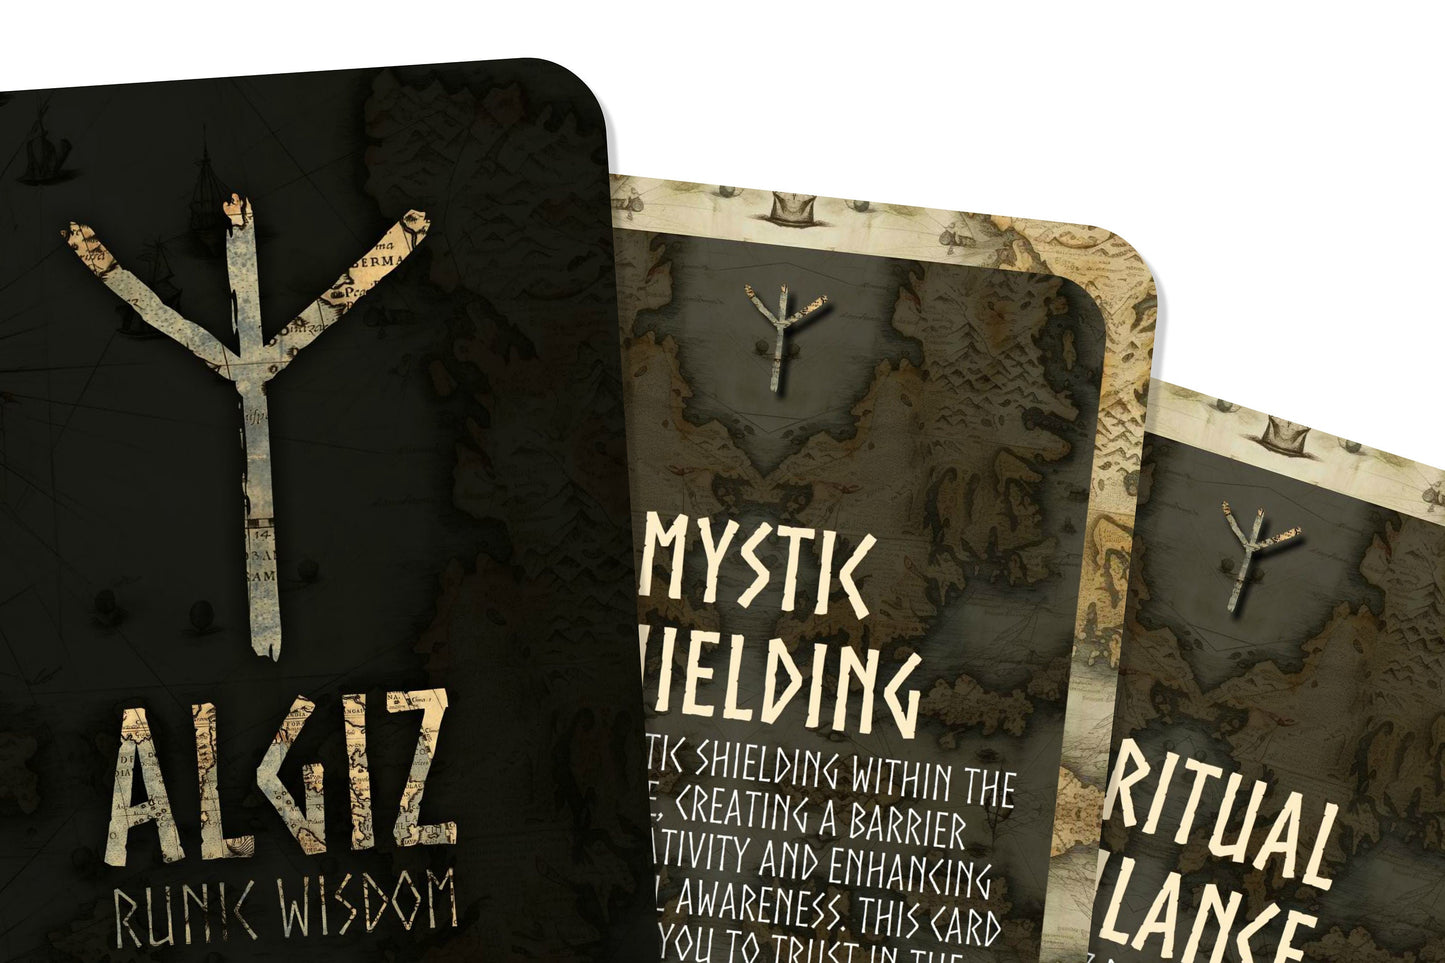 Algiz Runic Wisdom - Celestial Runes Series - Divination tools - Oracle Cards - Runes Cards